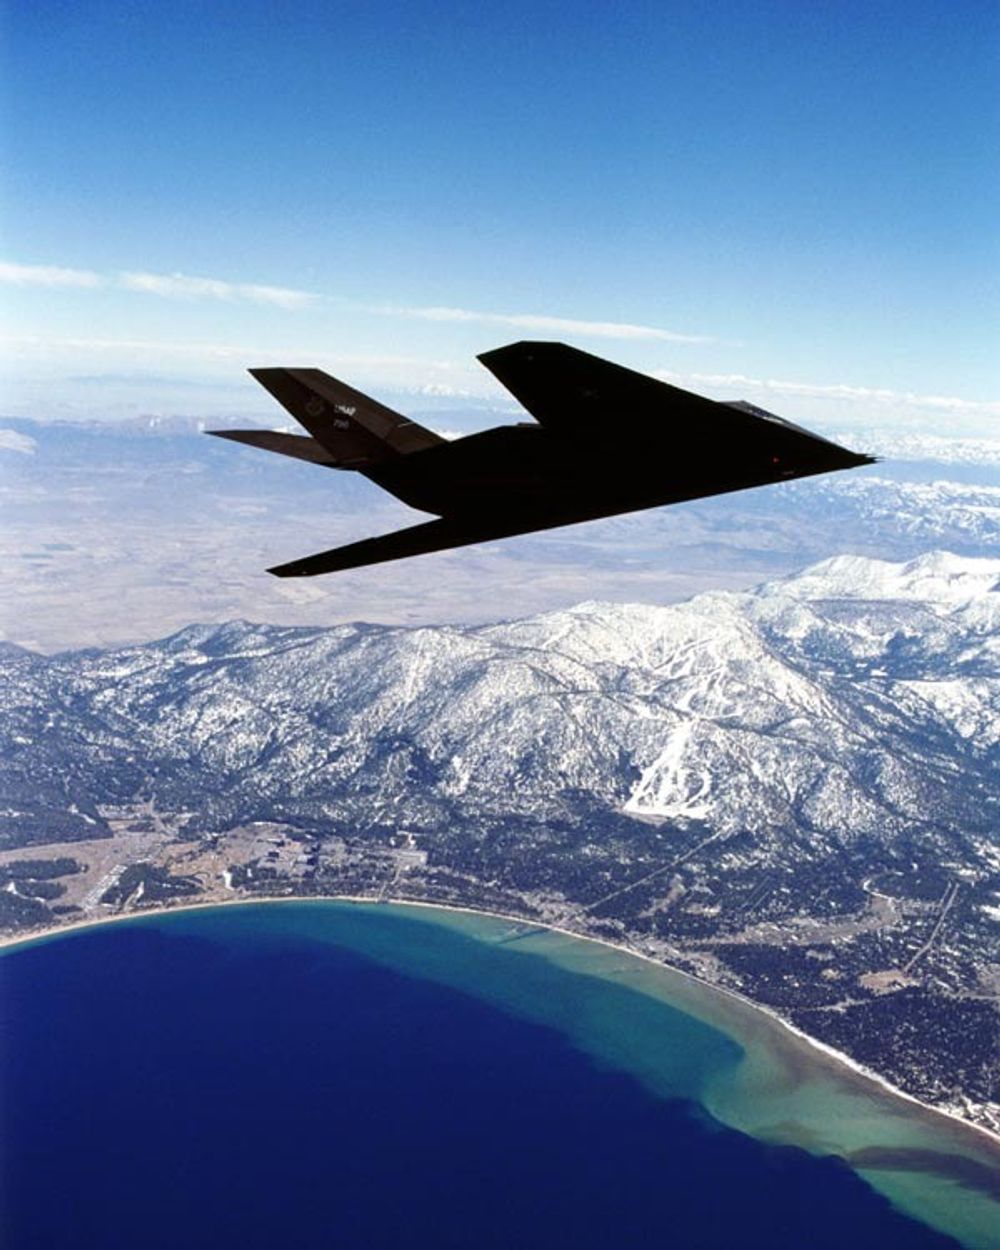 F-117 STEALTH: Lockheedflyet vakte kolossal oppmerksomhet da det med kallenavn Night Hawk debuterte mot Saddam Hussein i 1991. Luftforsvaret i Bagdad ante ingen ting før det plutselig smalt. Men flyet koster astronomiske summer å bygge og vedlikeholde.